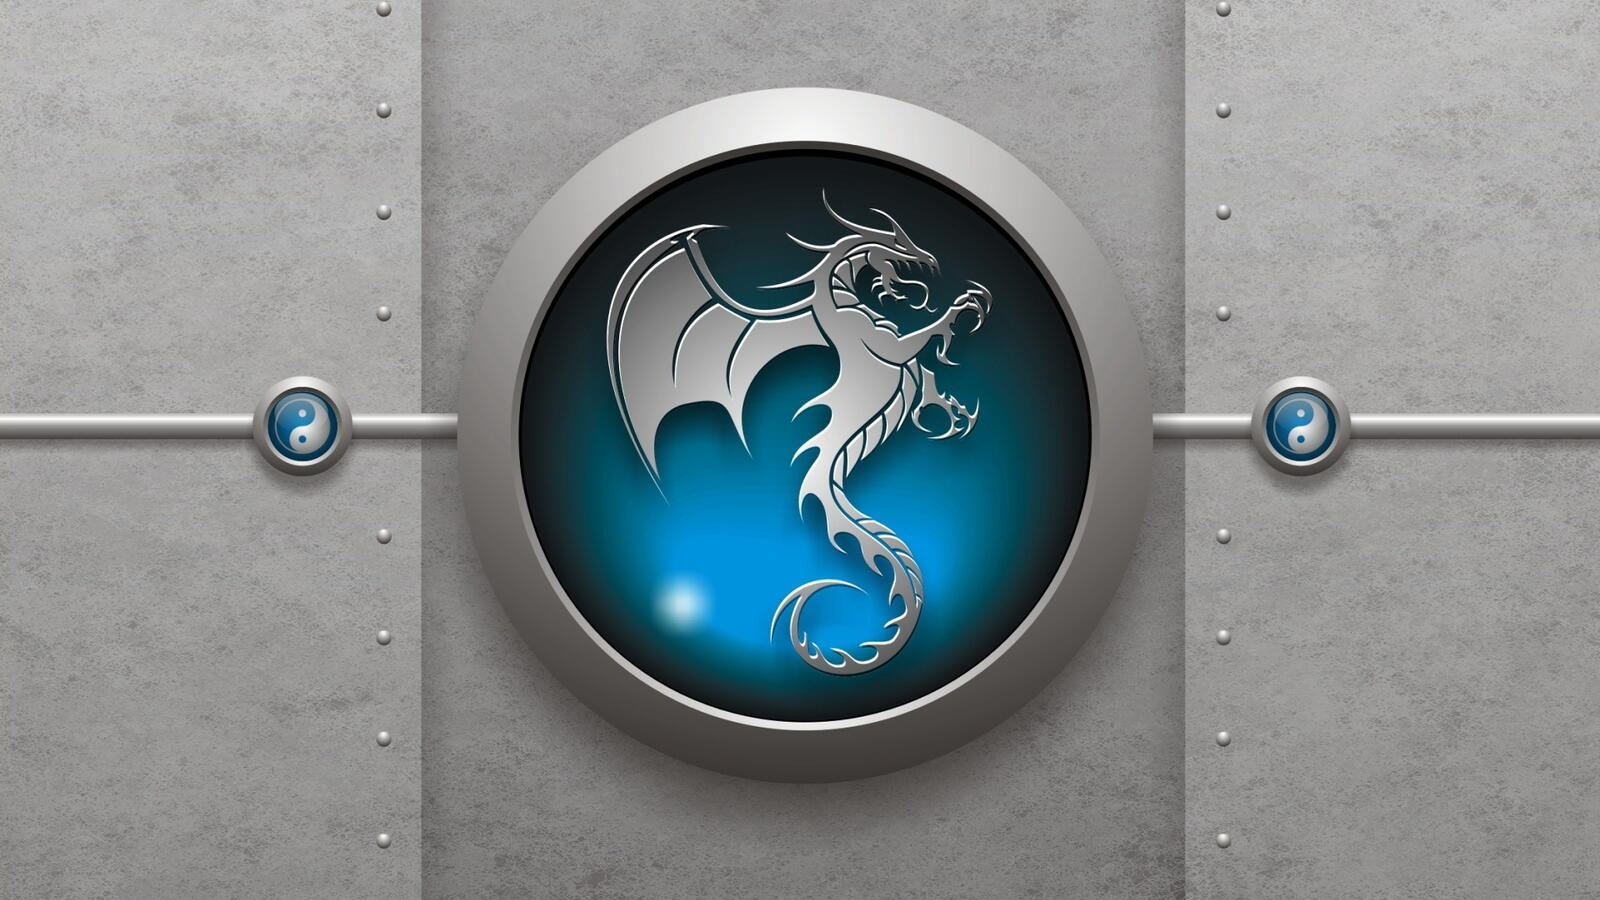 Wallpapers mortal combat bat badge emblem on the desktop